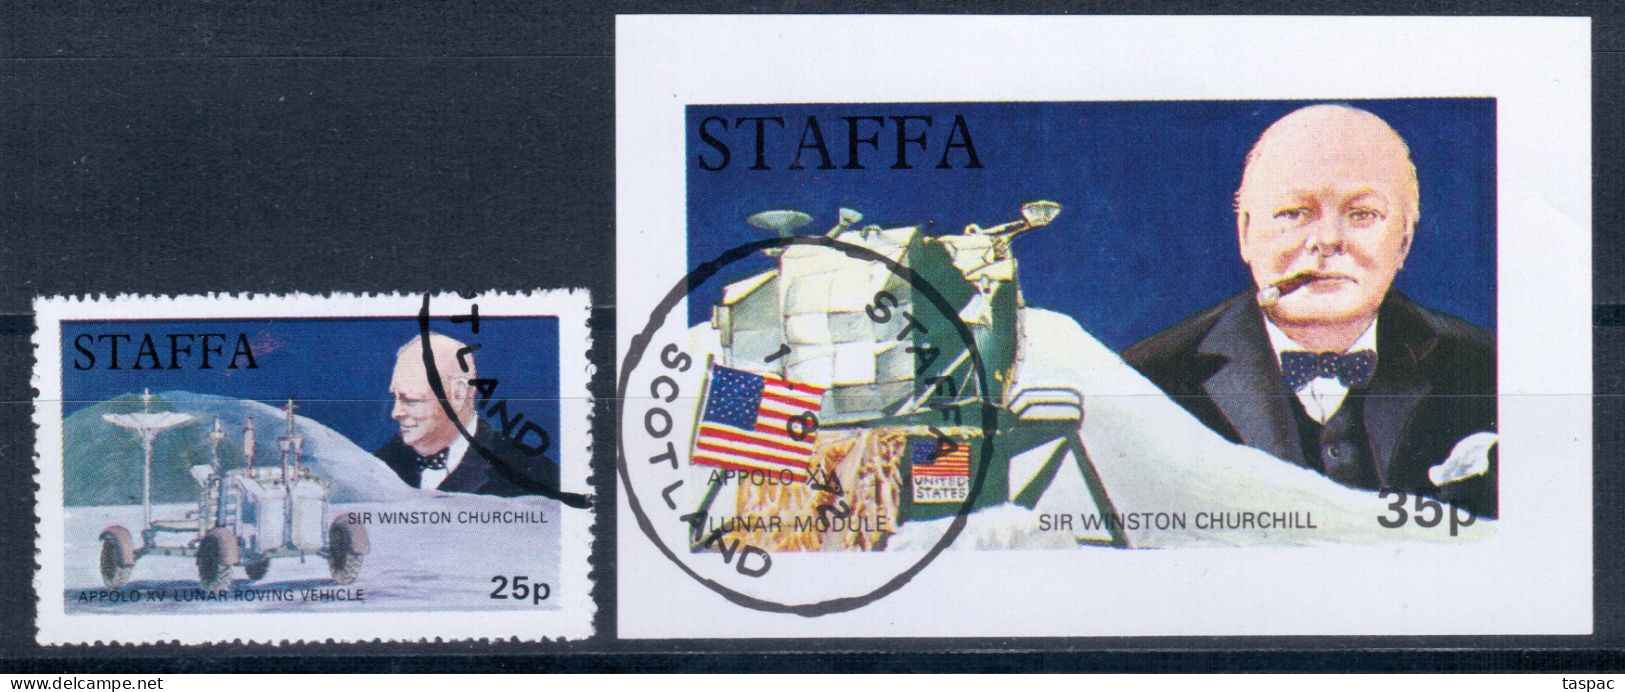 Staffa 1972 P# 33, Souvenir Sheet 6 Used - Churchill / Lunar Vehicle / Apollo 15 / Space - Local Issues